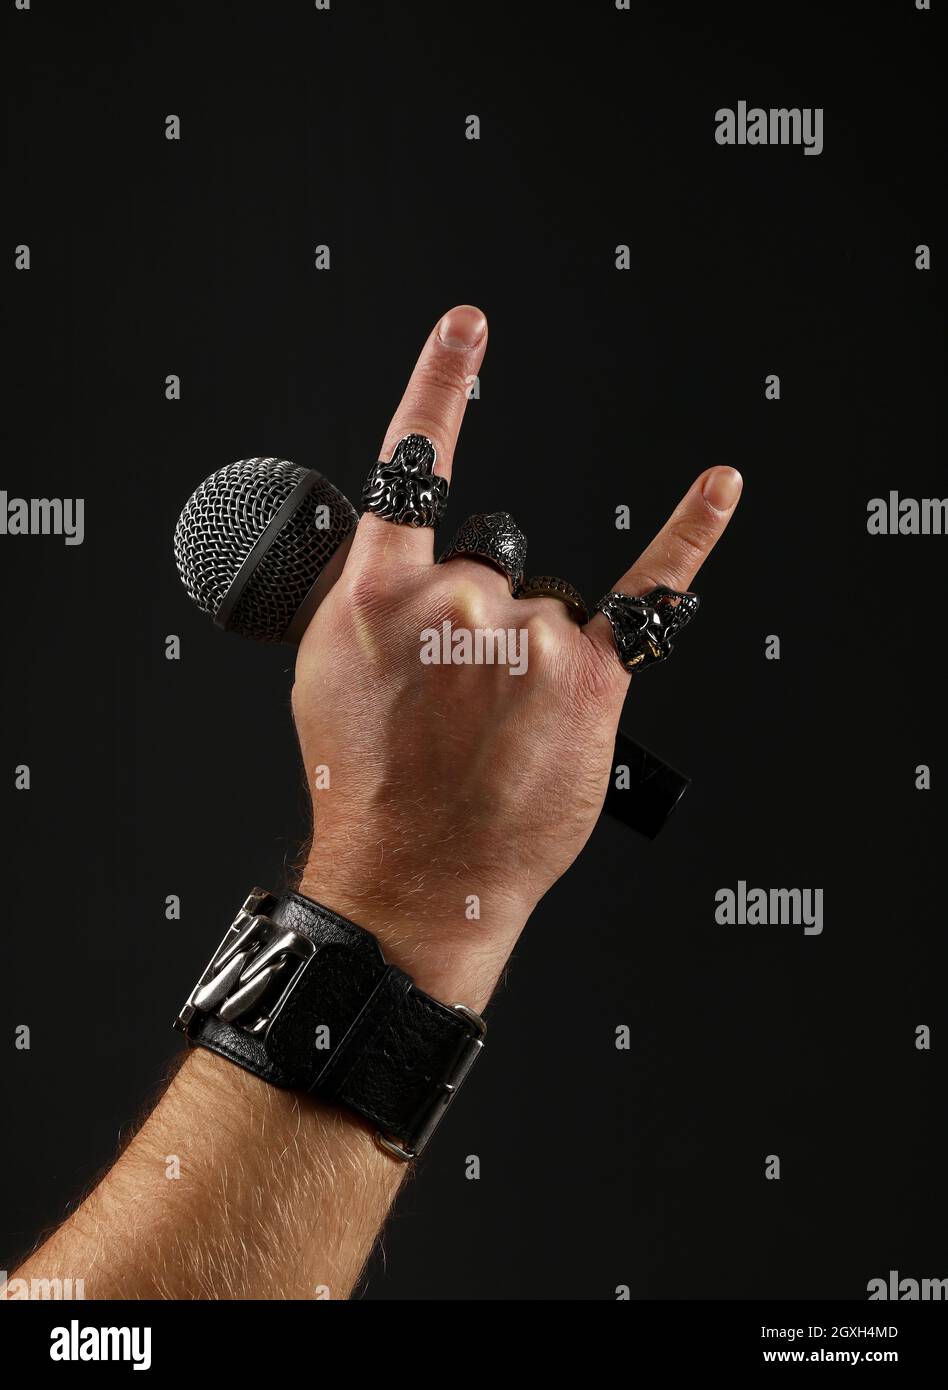 Close up man main avec anneaux en métal et bracelet montrant devil horns geste rock signe, holding microphone sur fond noir, side view Banque D'Images